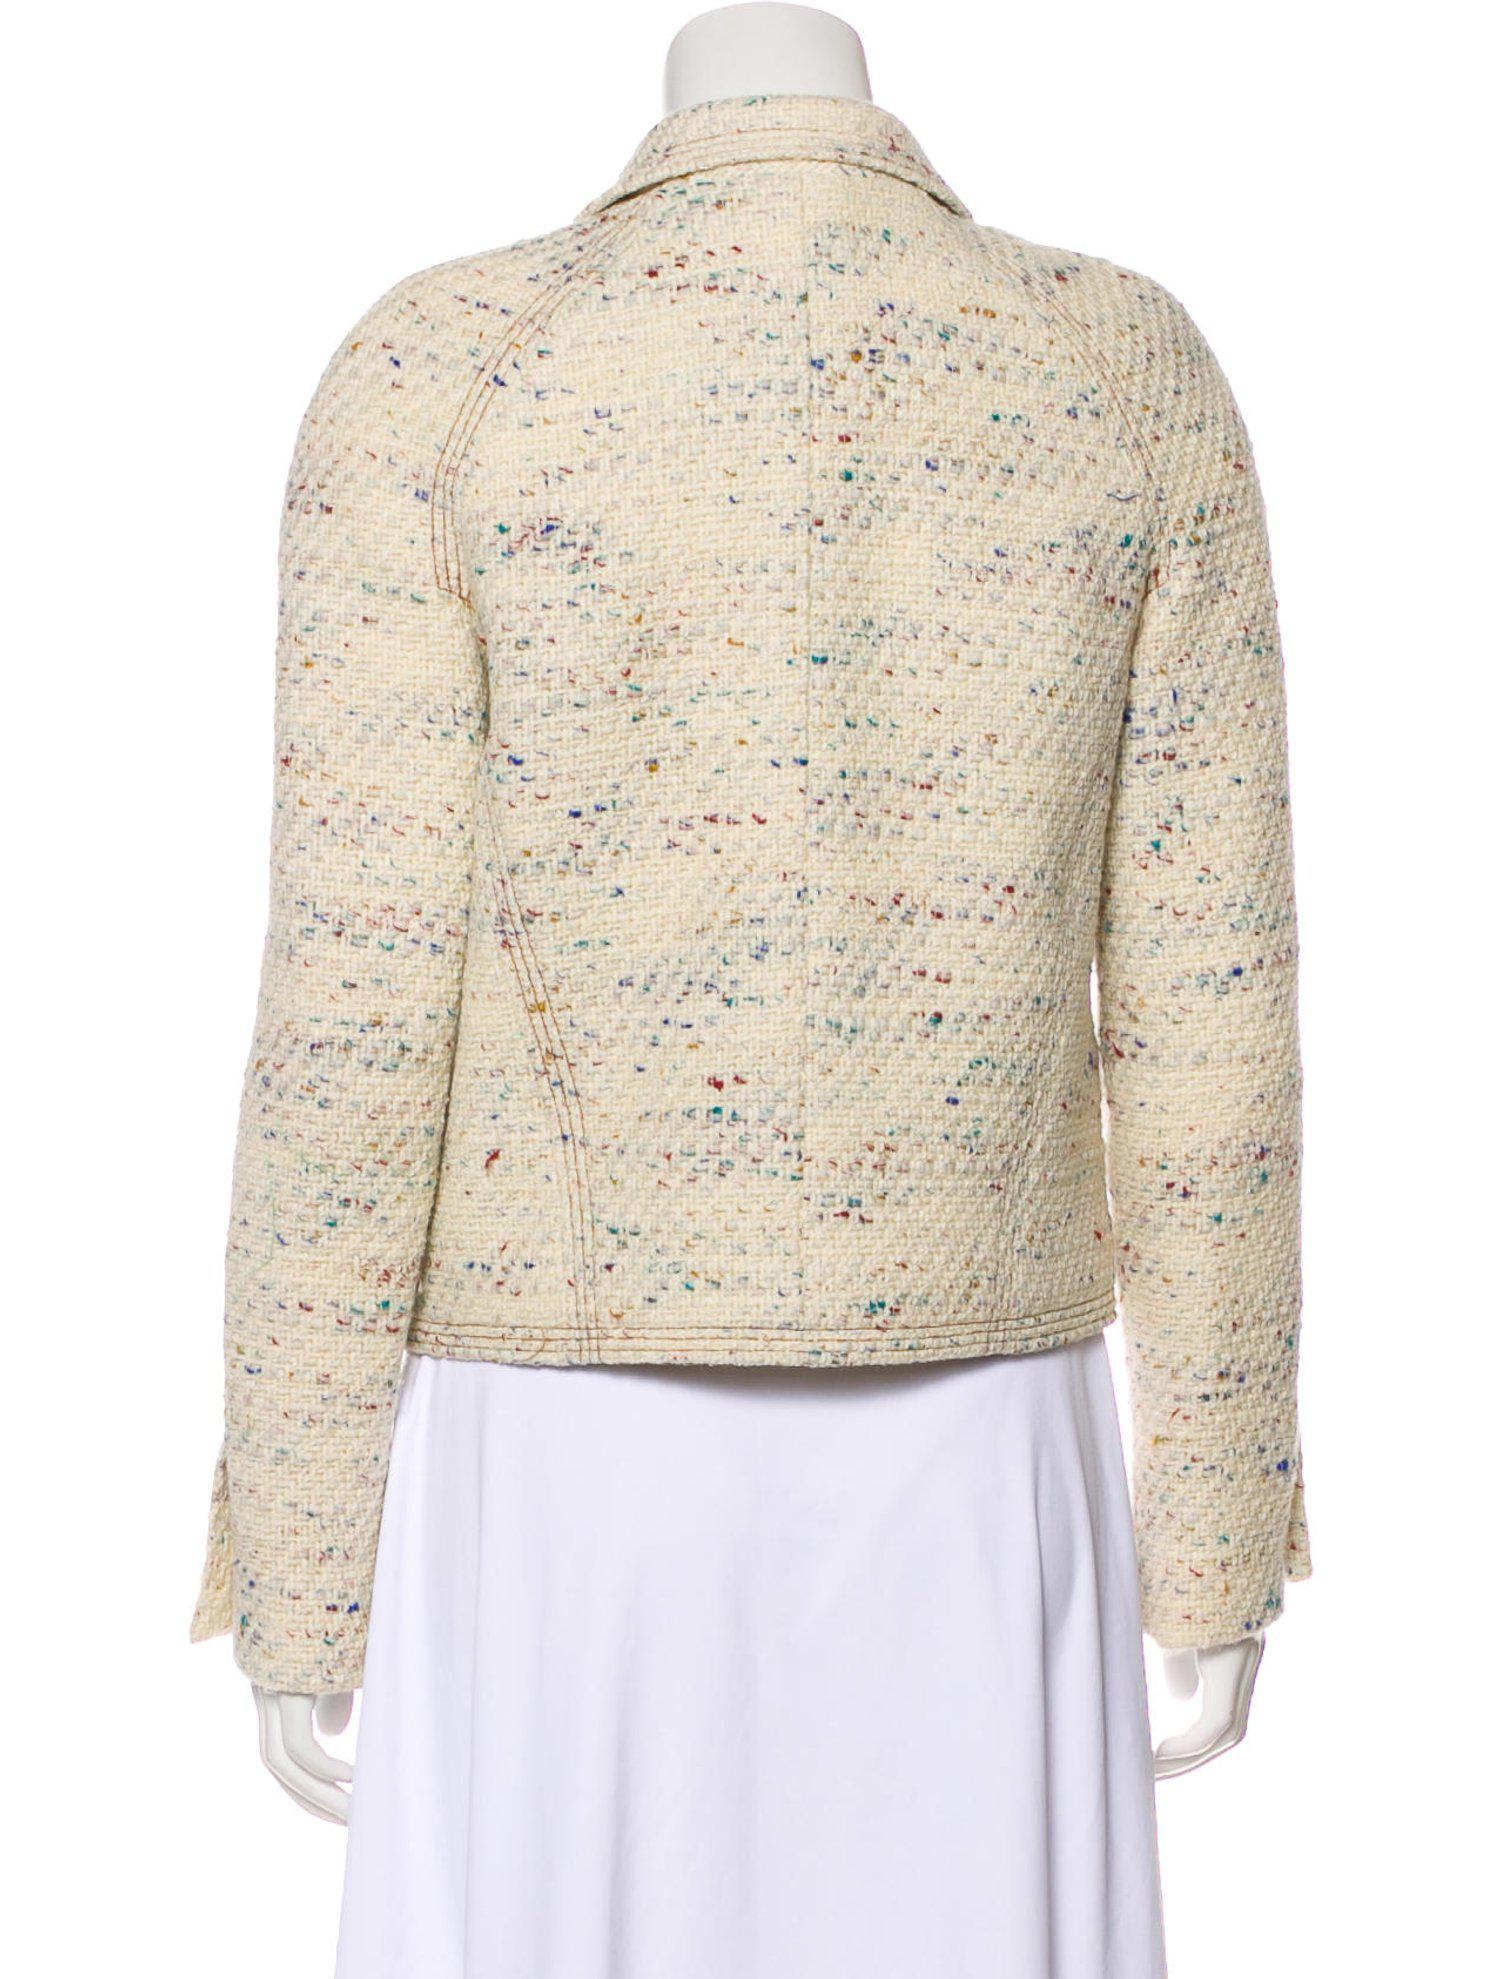 CHANEL 03C Ivory multi Wool tweed Jacket skirt Suit 38 シャネル アイボリー ミックス・ジャケット・スカート スーツ - CHANEL TC JAPAN